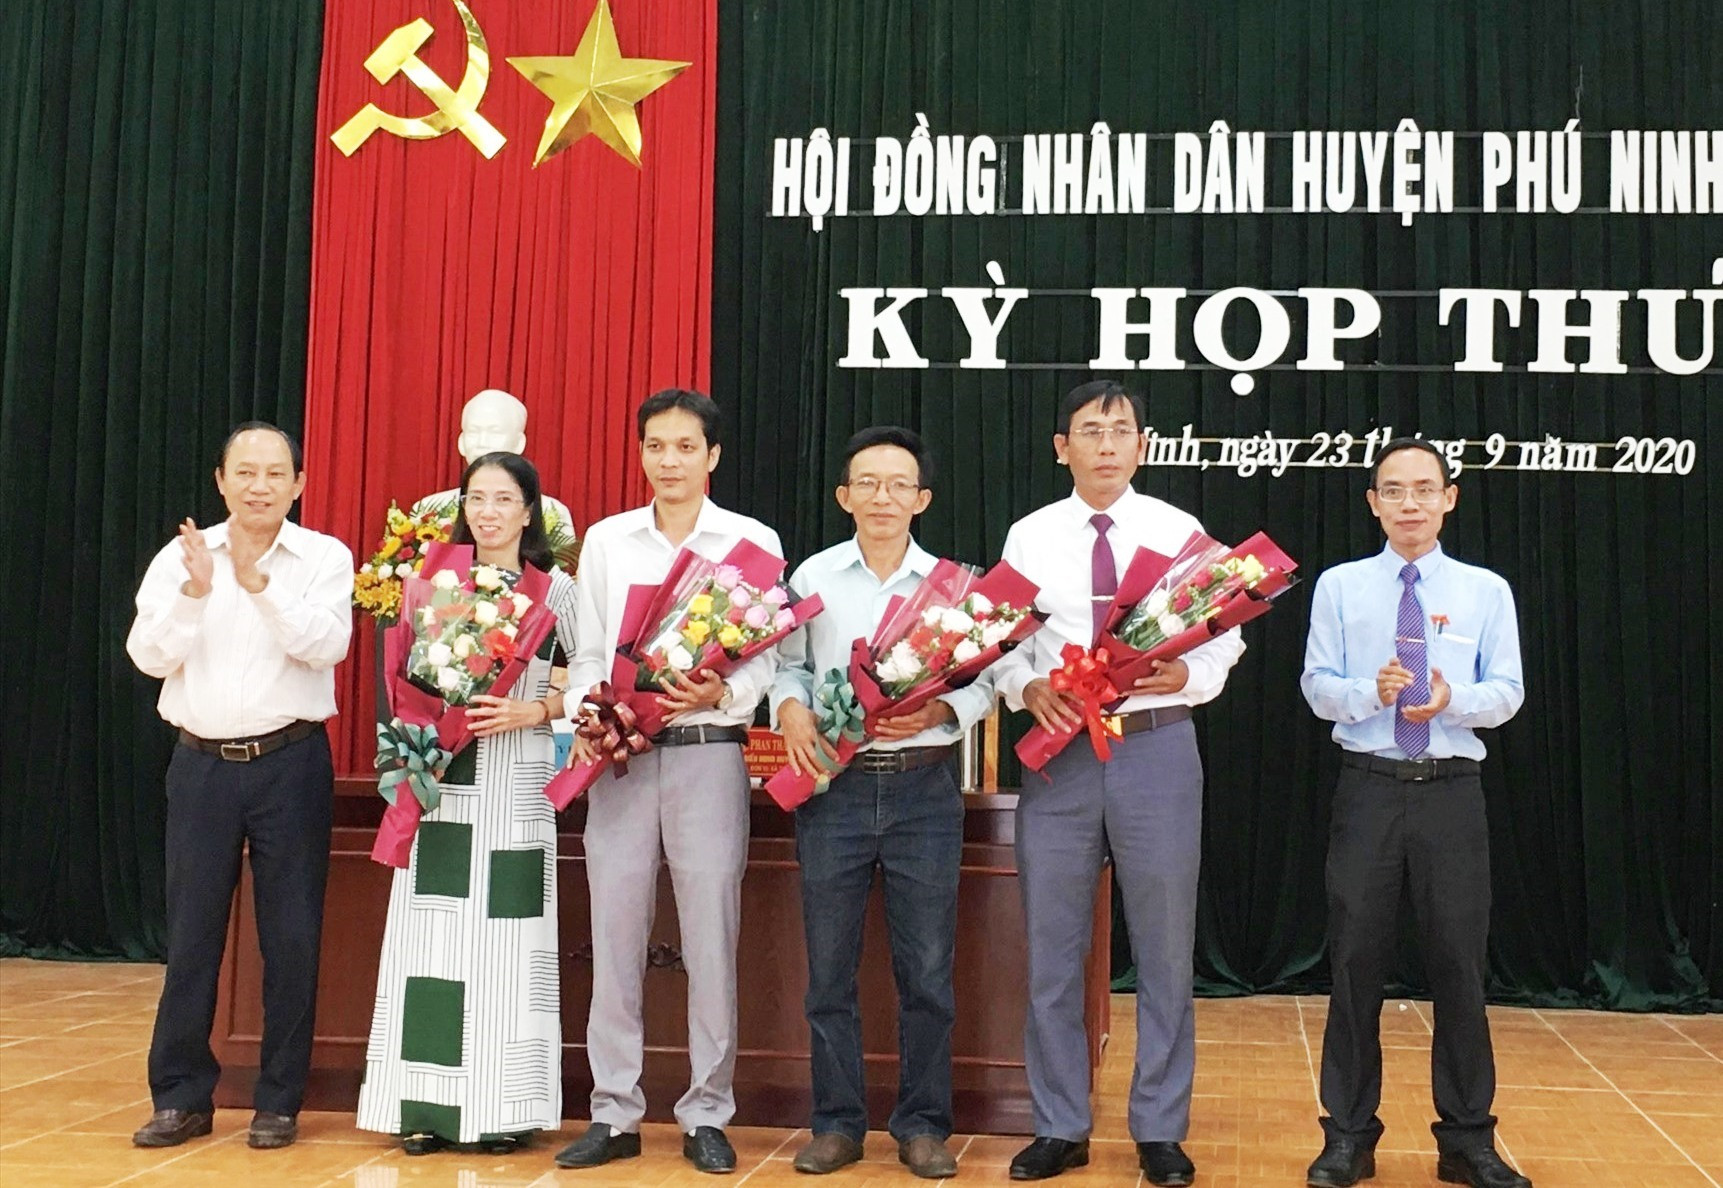 Lãnh đạo huyện Phú Ninh tặng hoa chúc mừng các đồng chí trúng cử vào các chức danh HĐND, UBND nhiệm kỳ 2016 - 20201